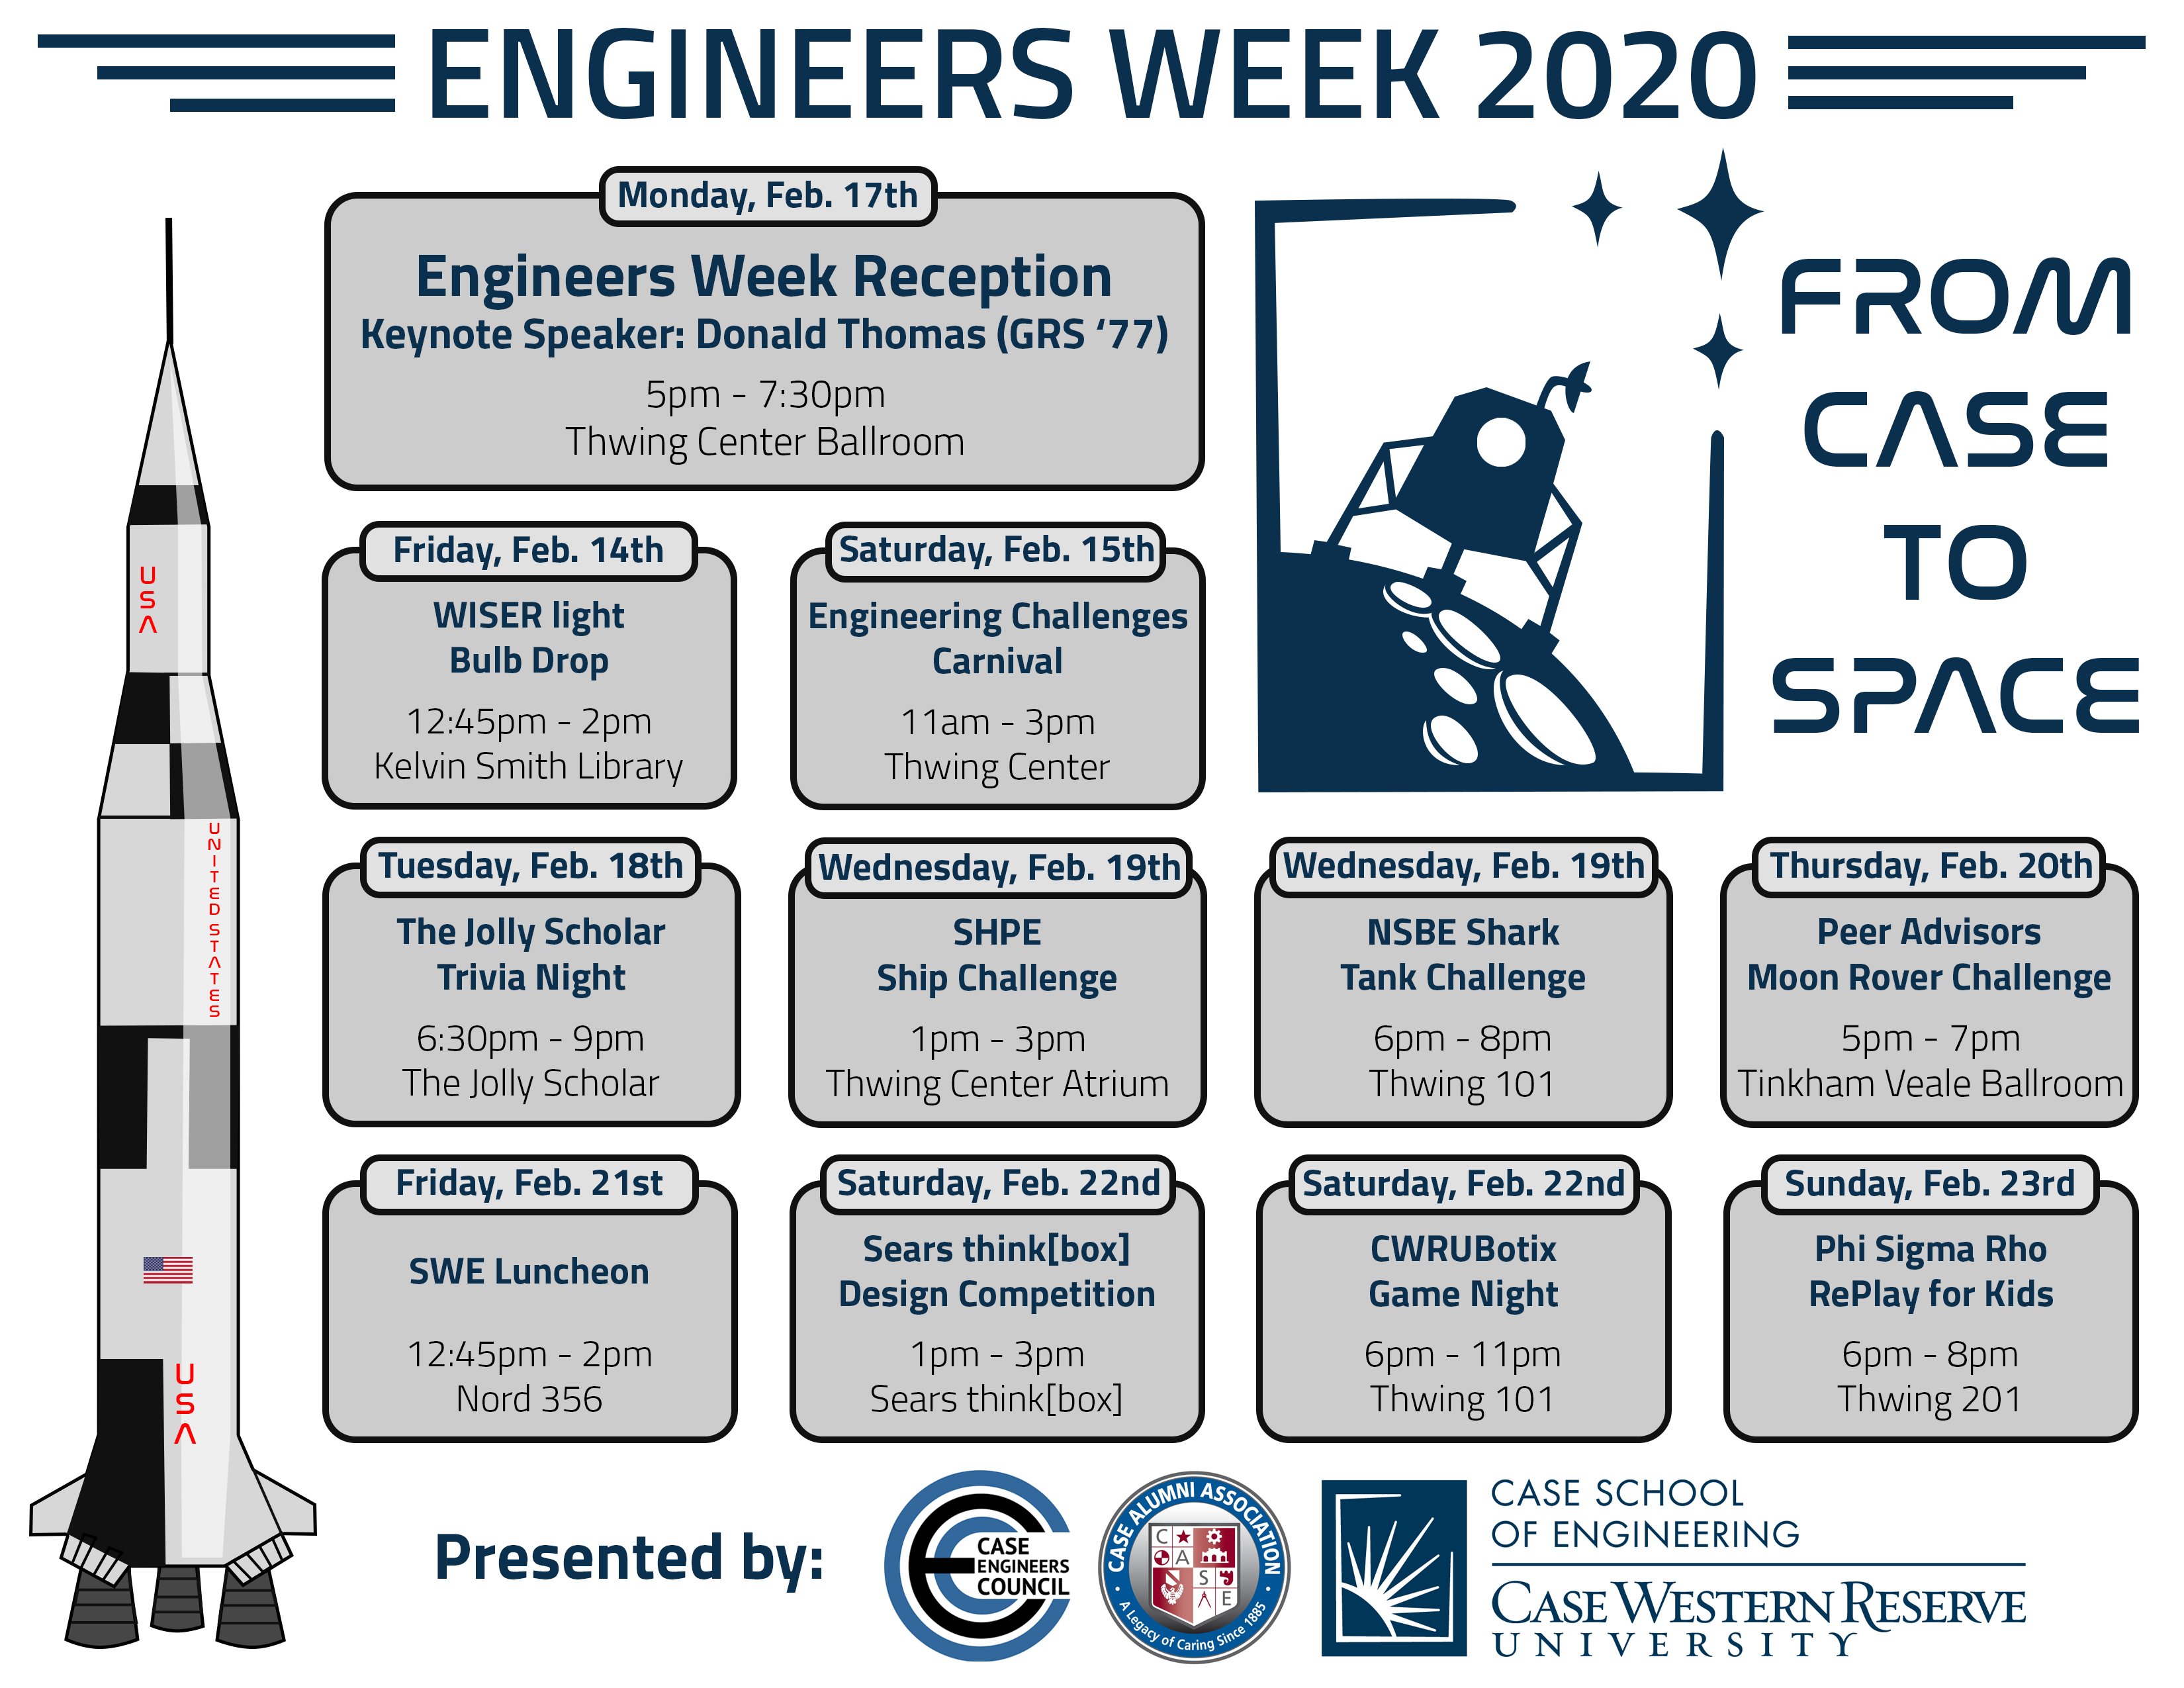 Engineers Week 2020 Case School of Engineering Case Western Reserve